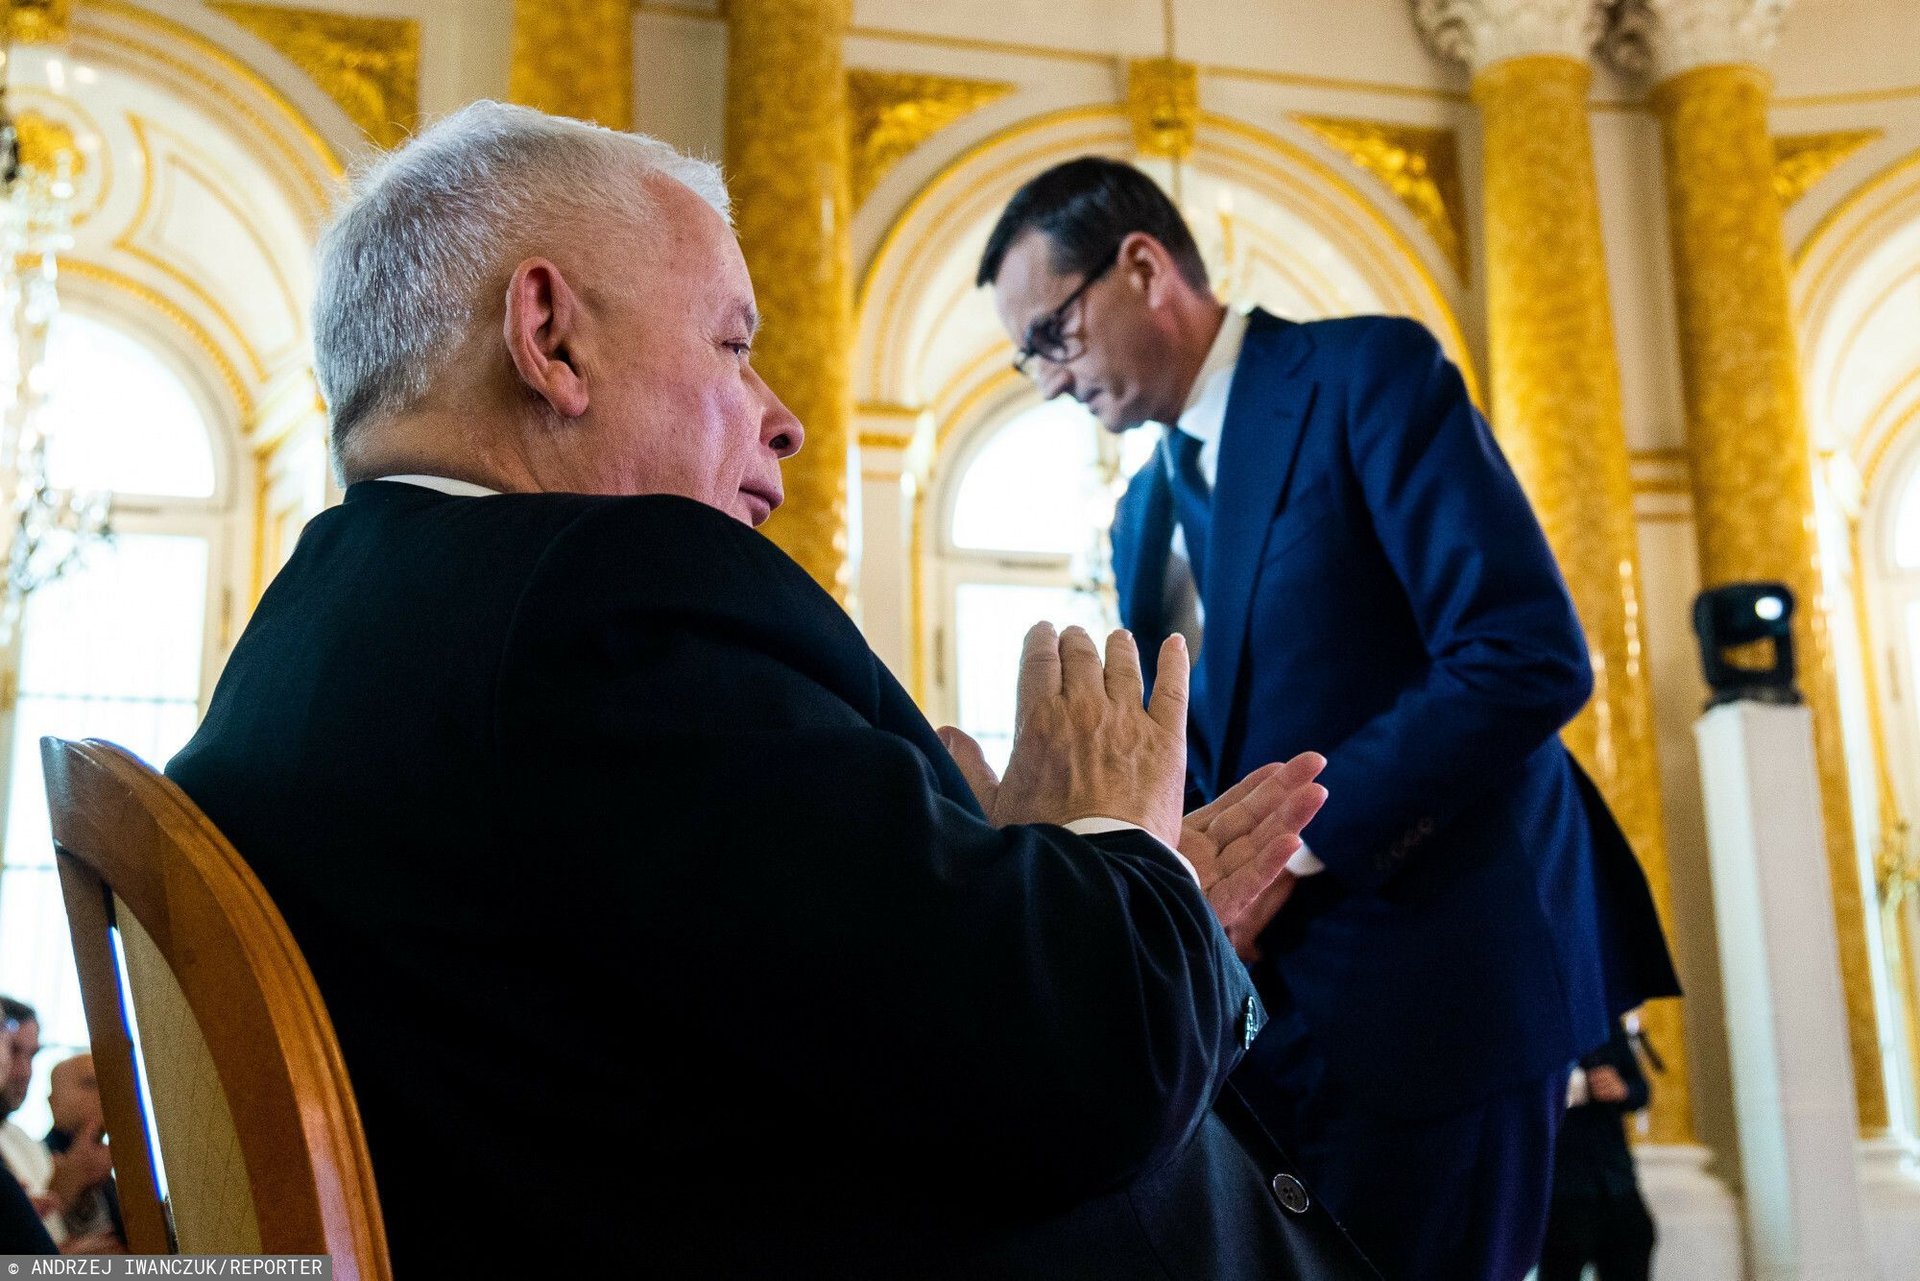 Czy dni Mateusza Morawieckiego na stanowisku Prezesa Rady Ministrów są policzone? Wywiad Jarosława Kaczyńskiego daje do myślenia.